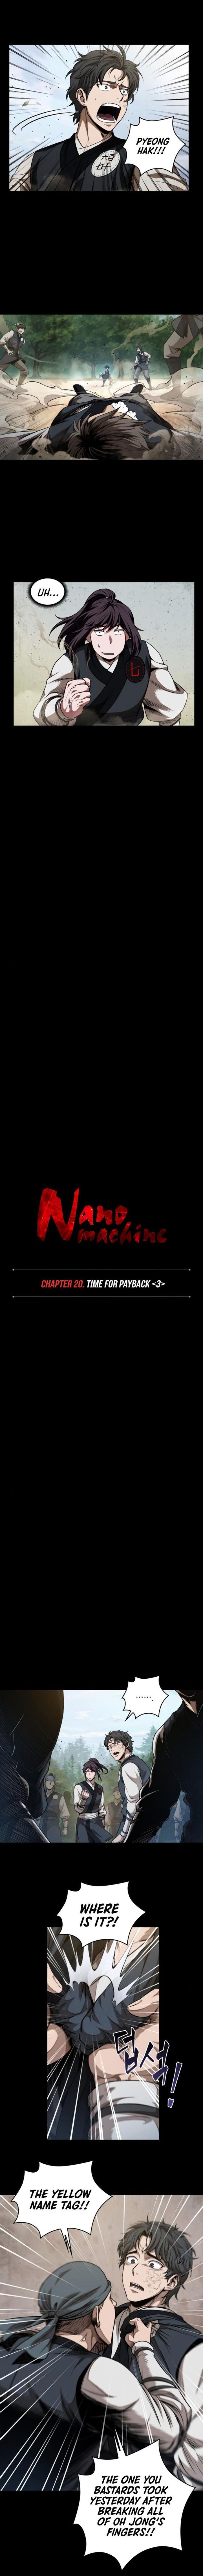 nano_machine_53_2